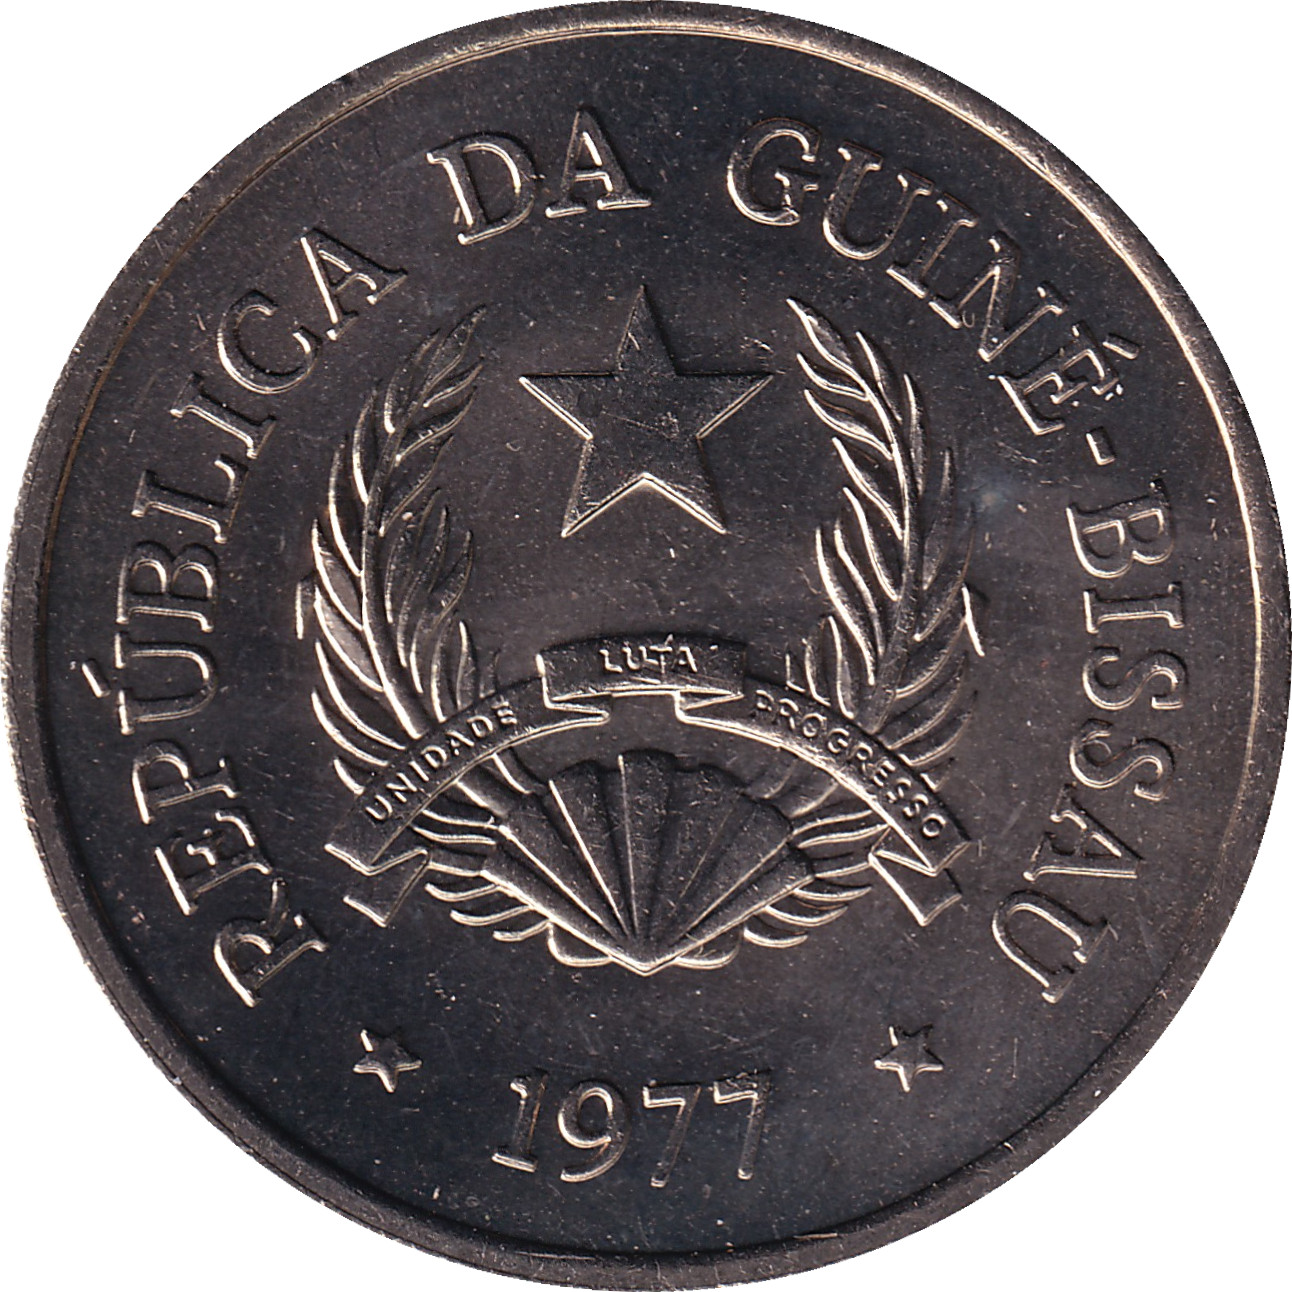 5 pesos - FAO